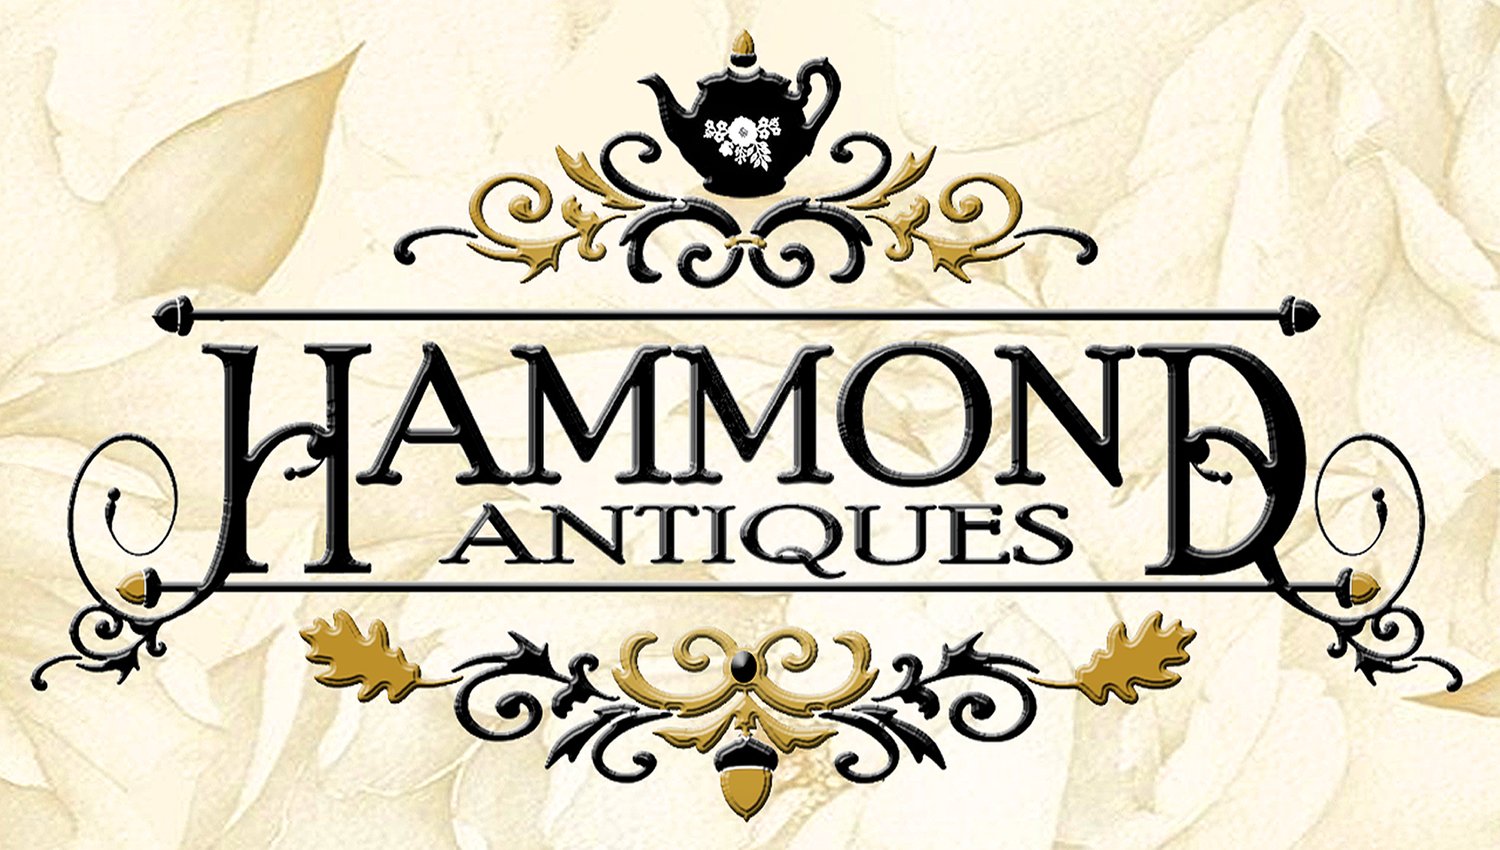 Hammond Antiques